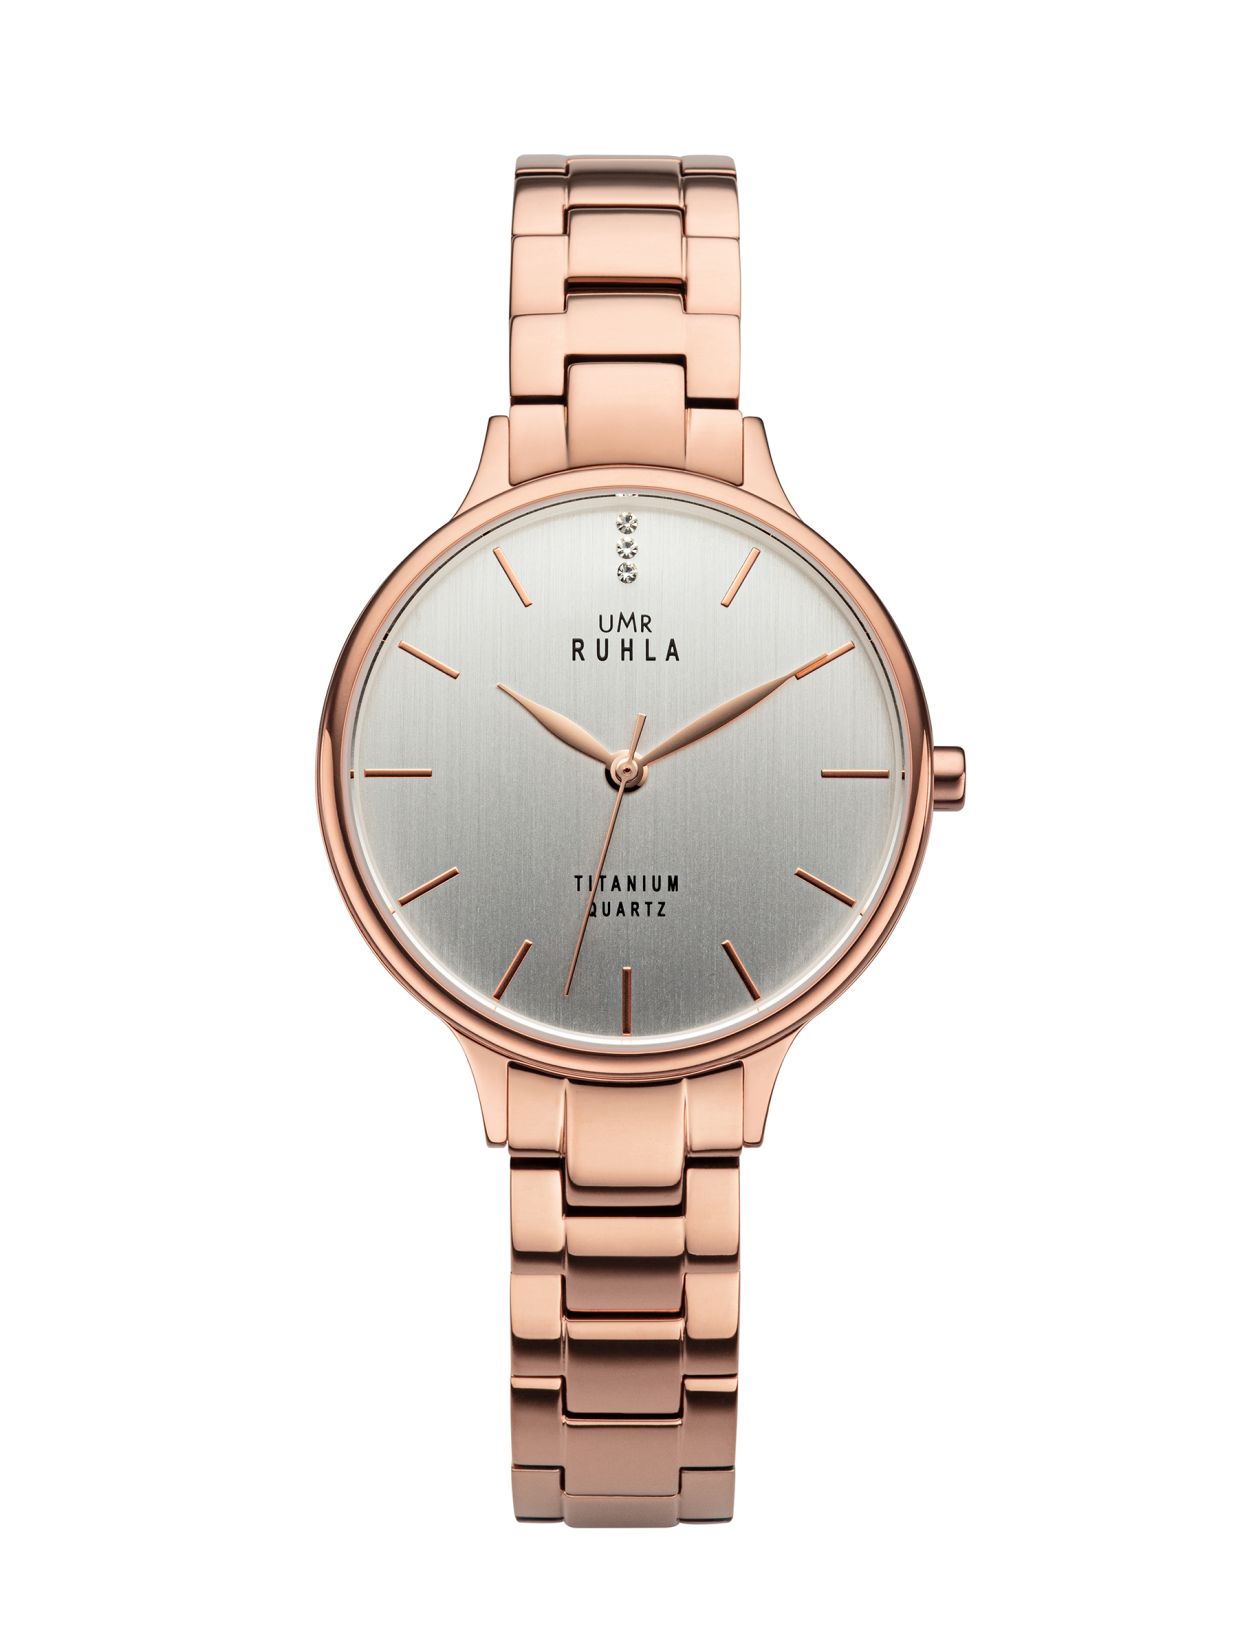 Uhren Manufaktur Ruhla - Armbanduhr Style Titan rosé